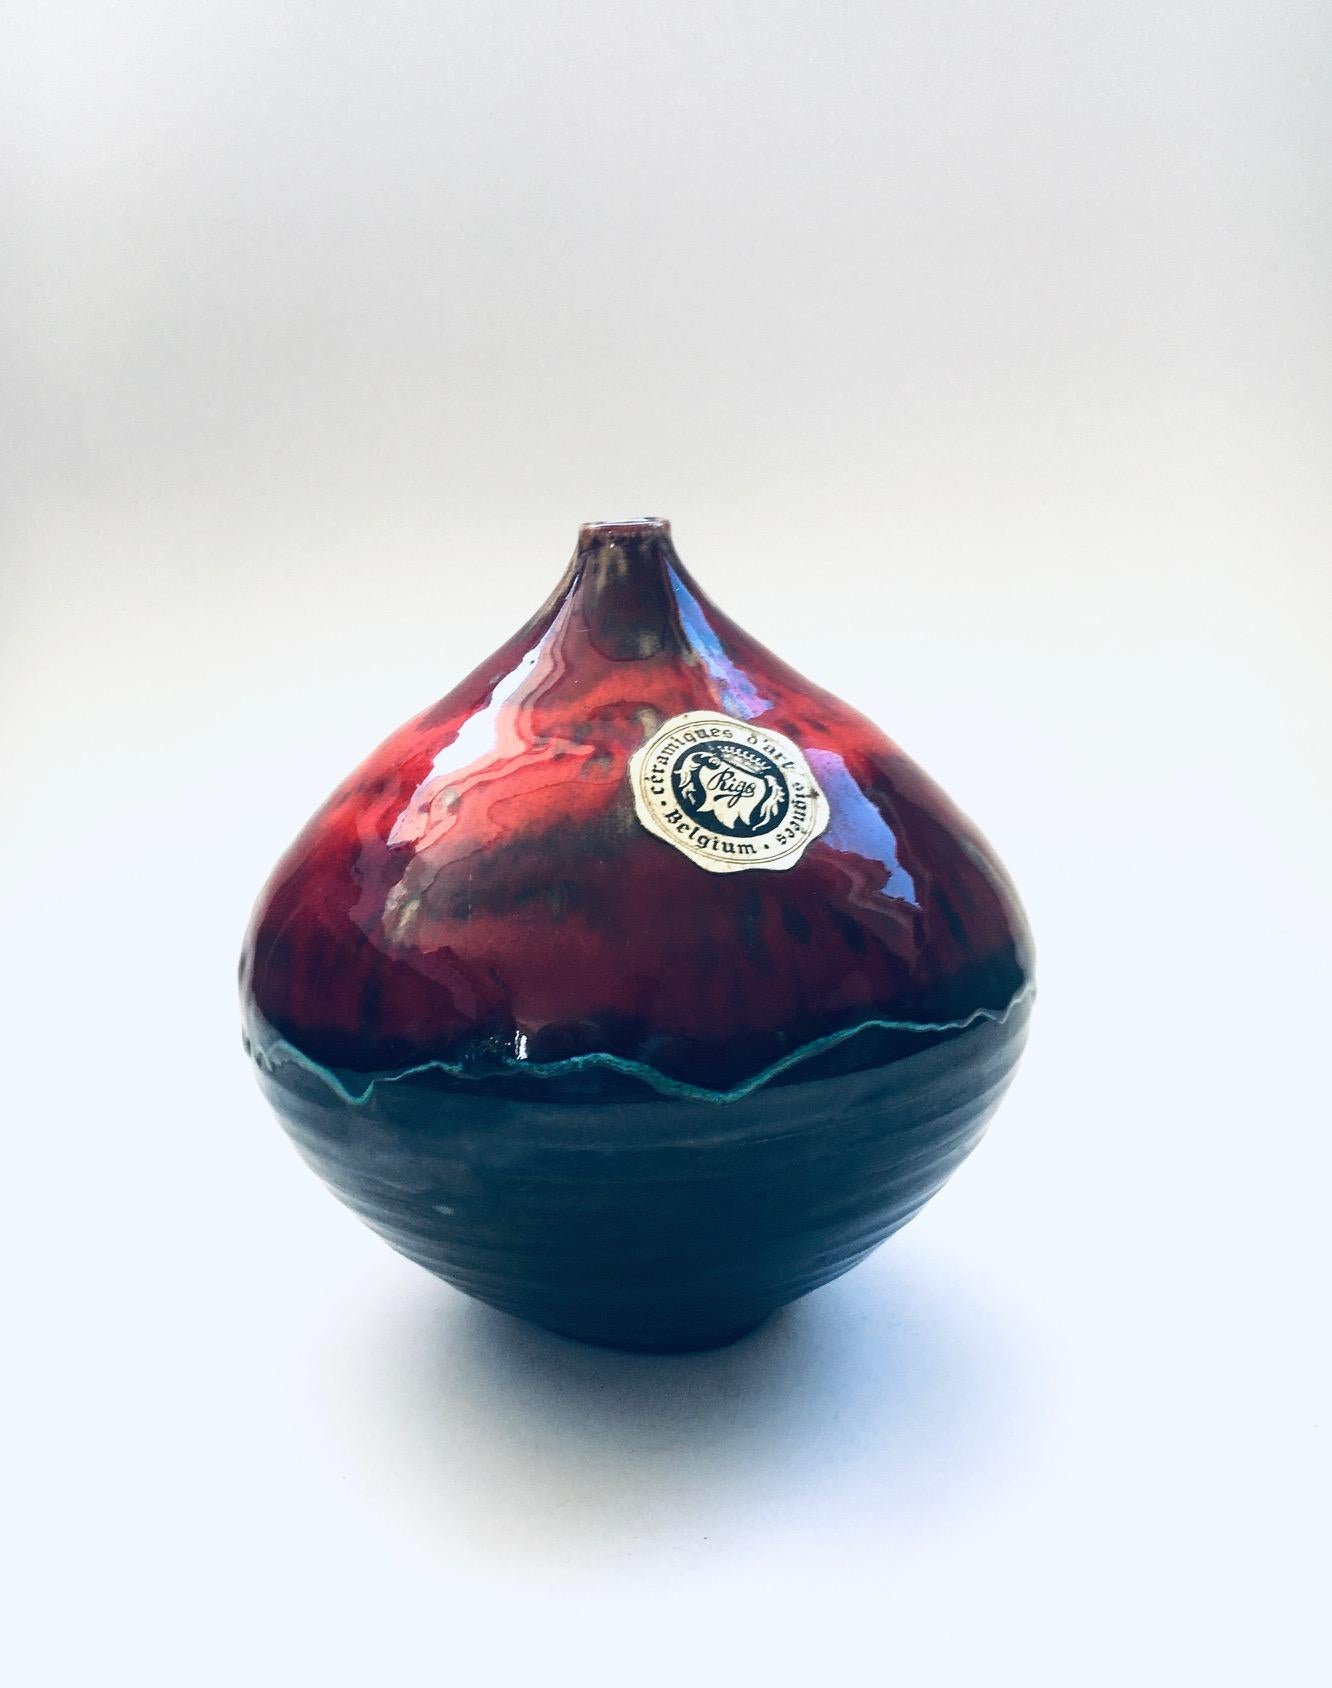 Vintage Midcentury Studio Art Pottery Ceramic Céramiques d'Art Signée Spout Vase, hergestellt in Belgien 1960er Jahre. Handgefertigte Keramikvase mit schwarzer Metallunterglasur und roter und oranger Überglasur. In sehr gutem Zustand. Maße: 16cm x